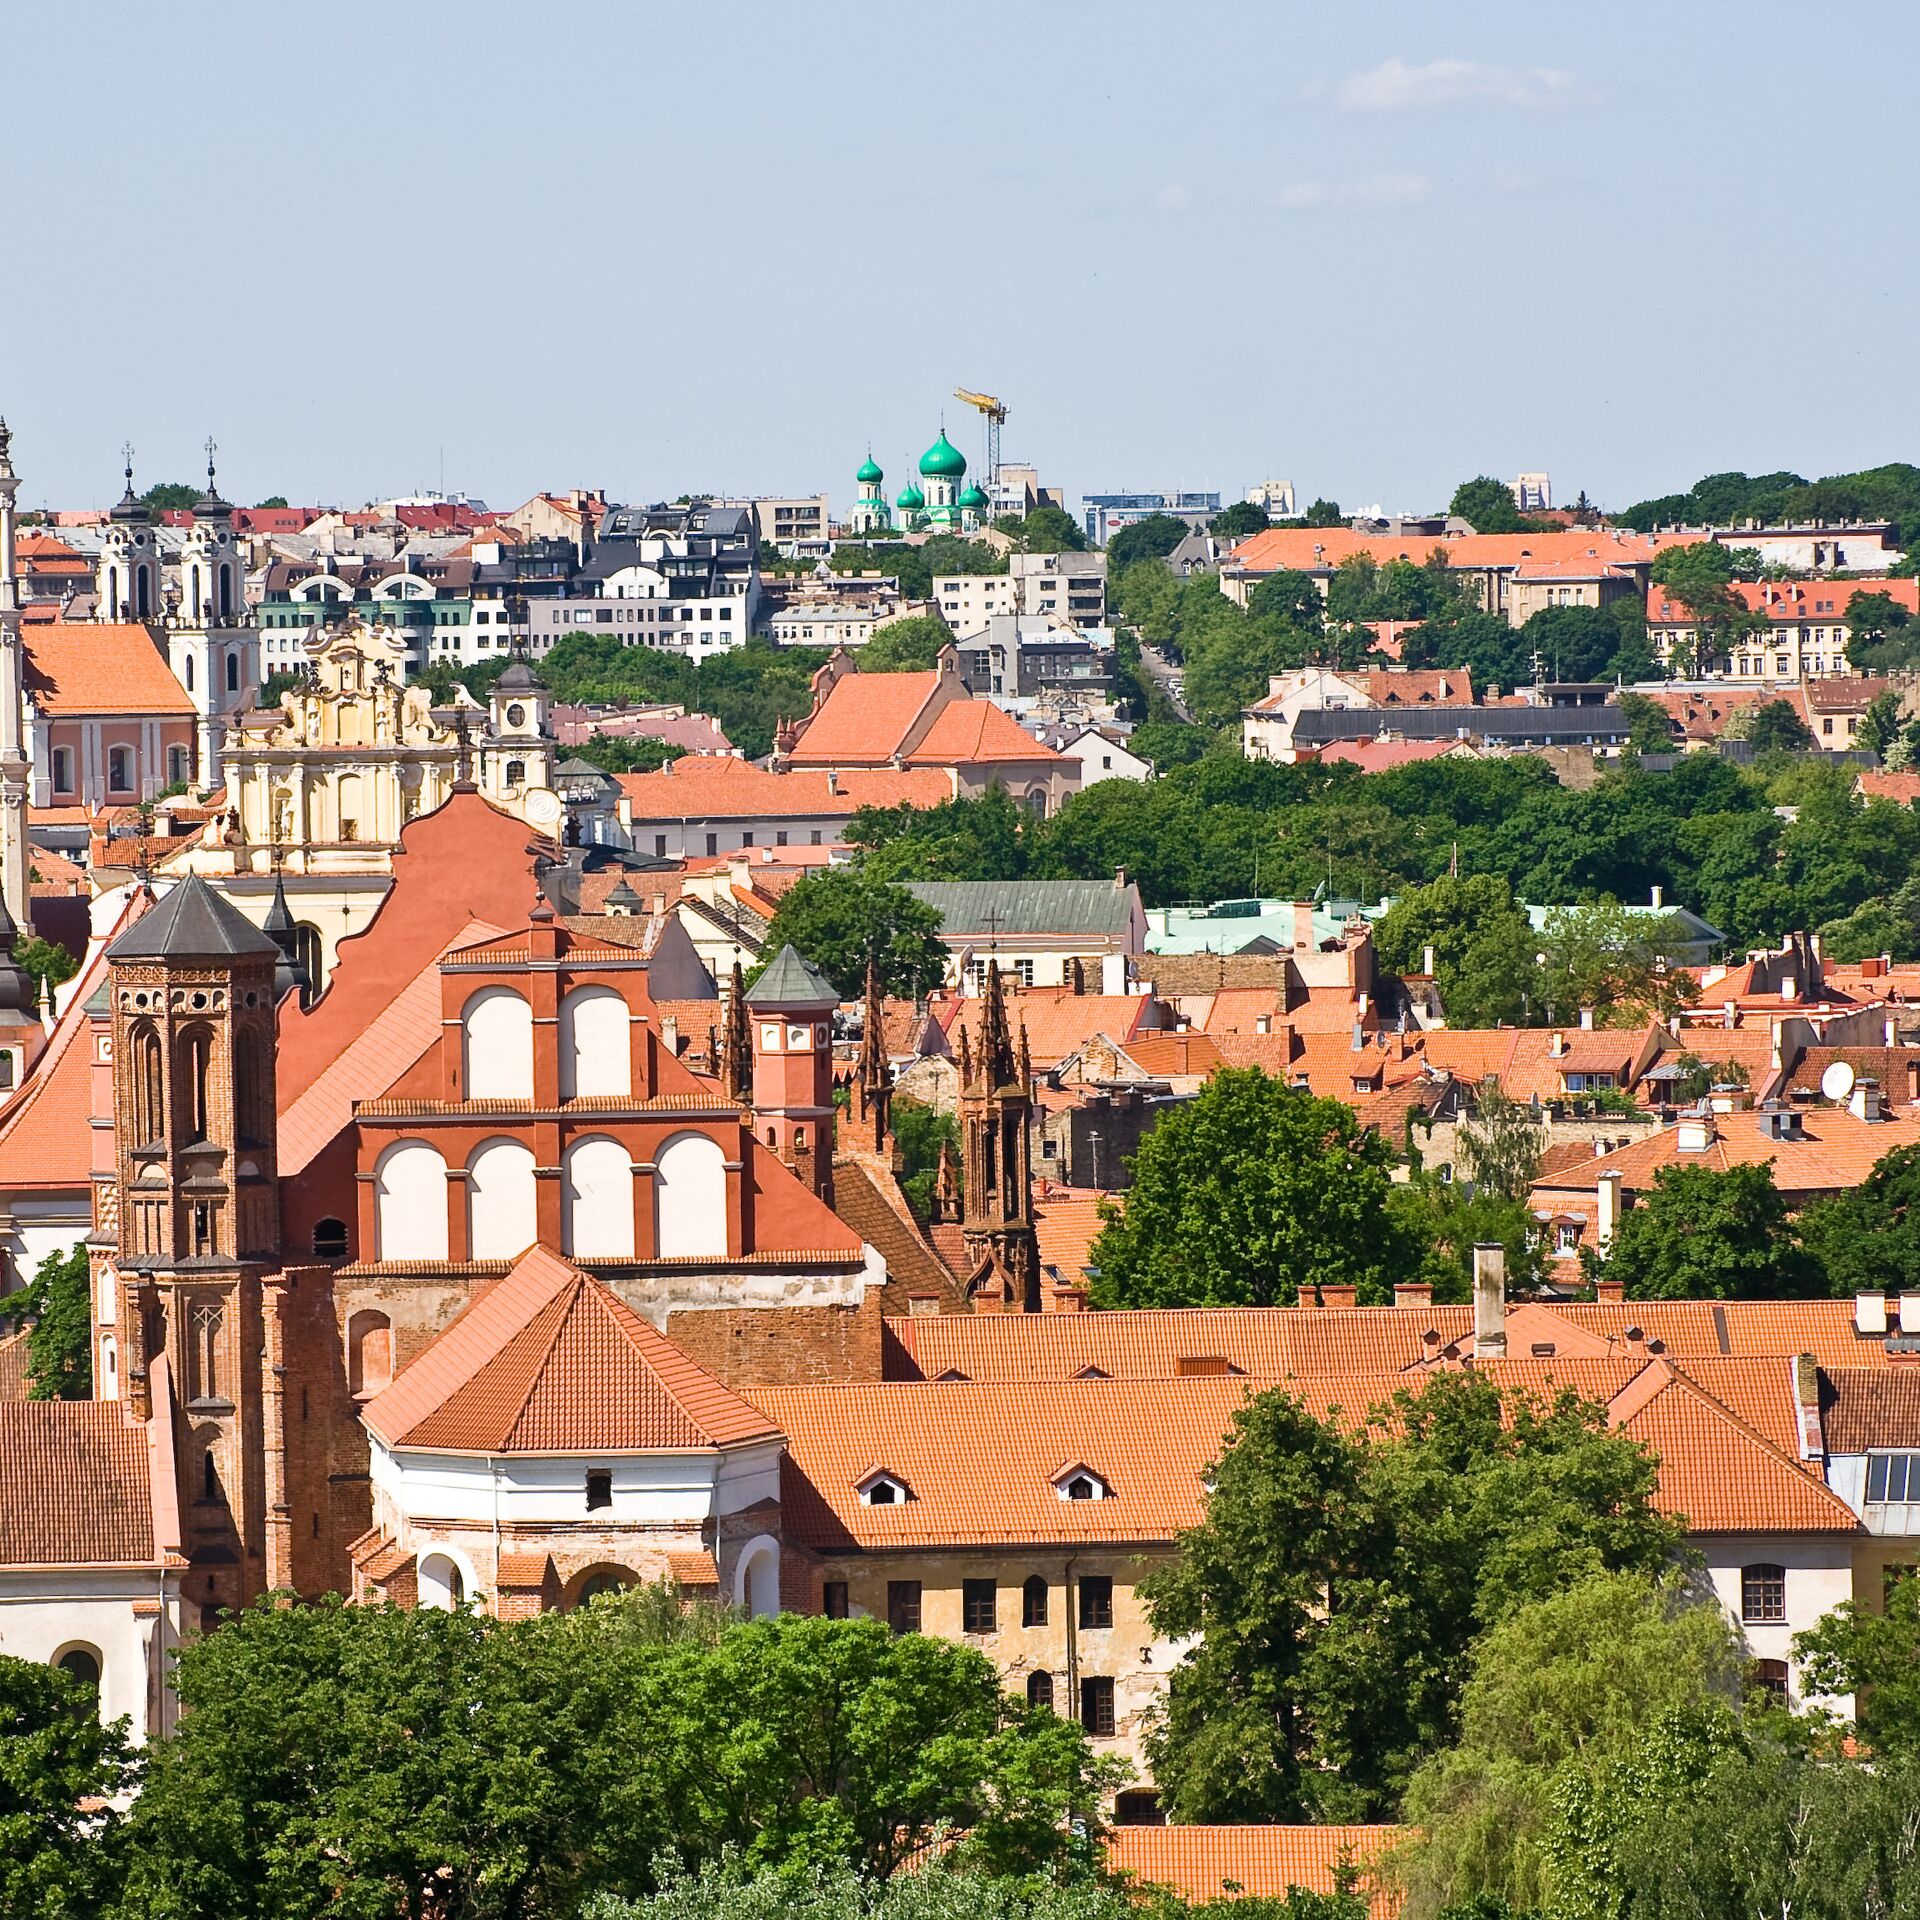 Литва столица какой страны. Литва столица Вильнюс. Литва столица Вильнюс старый город. Кельме город в Литве. Вильнюс Вильно Вильна.